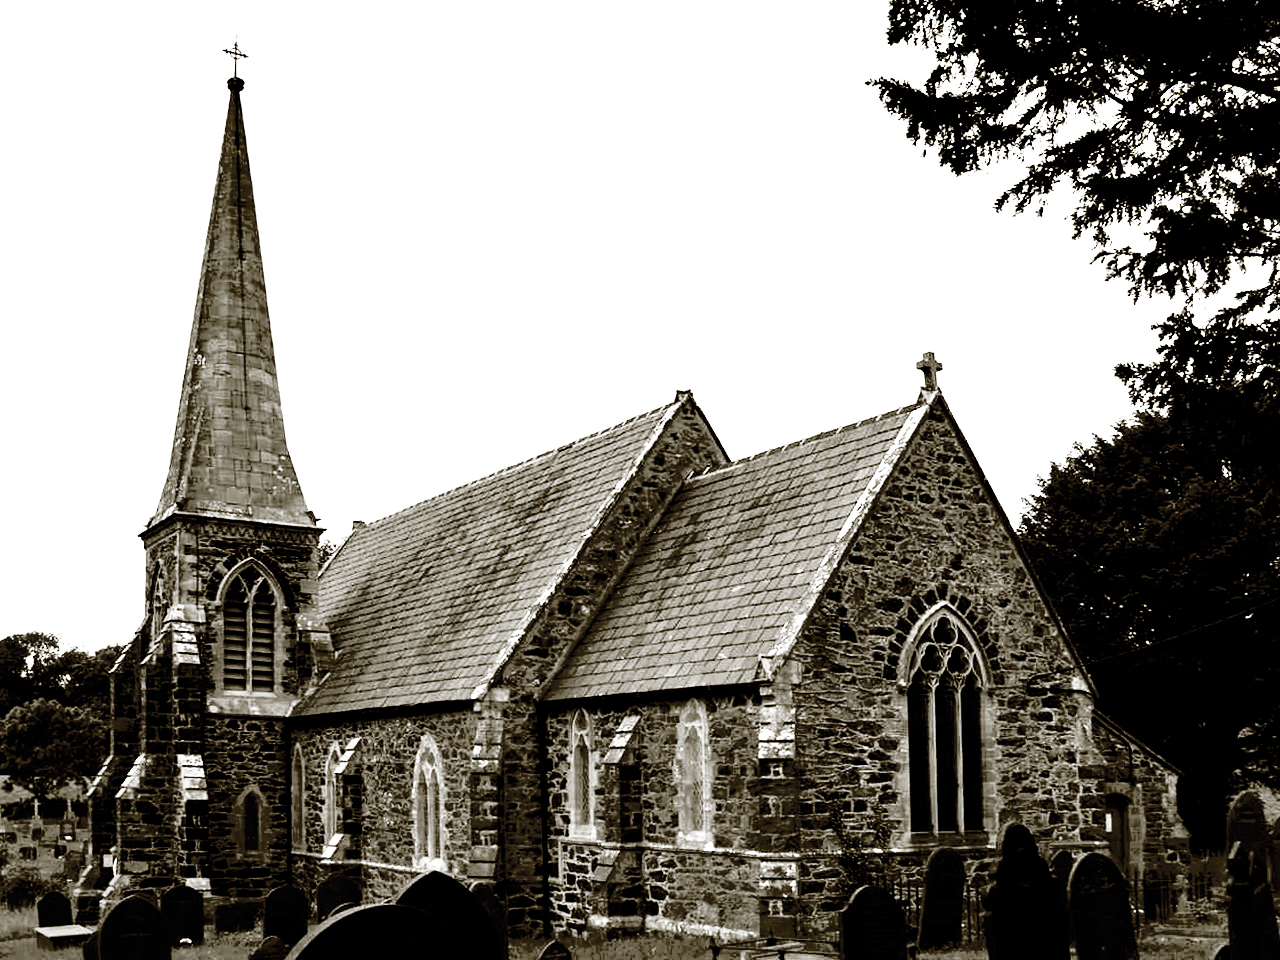 Llanfair (St Mary's Church) in Llanfair Pwllgwyngyll Angelsey